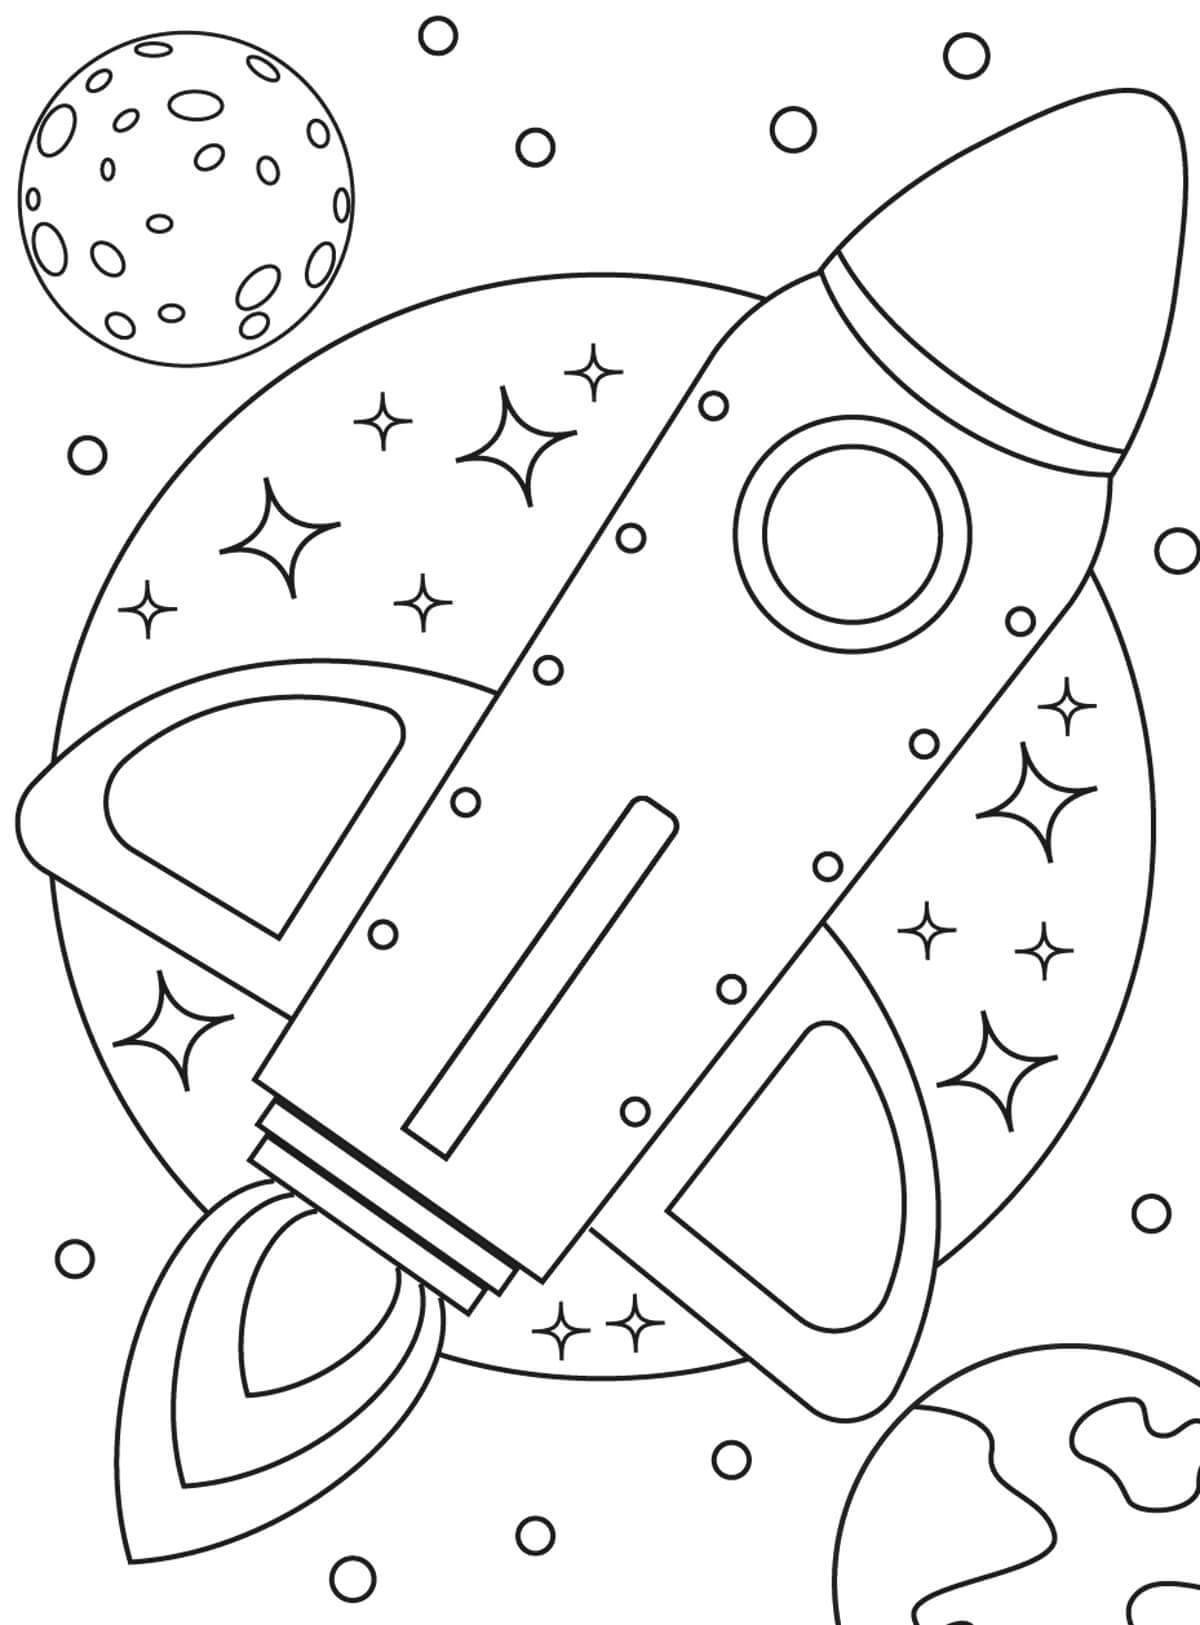 Раскраски космос для детей 3 4 лет. Космос раскраска для детей. Космос раскраска для детей 4 лет. Раскраска. В космосе. Детские раскраски космос.